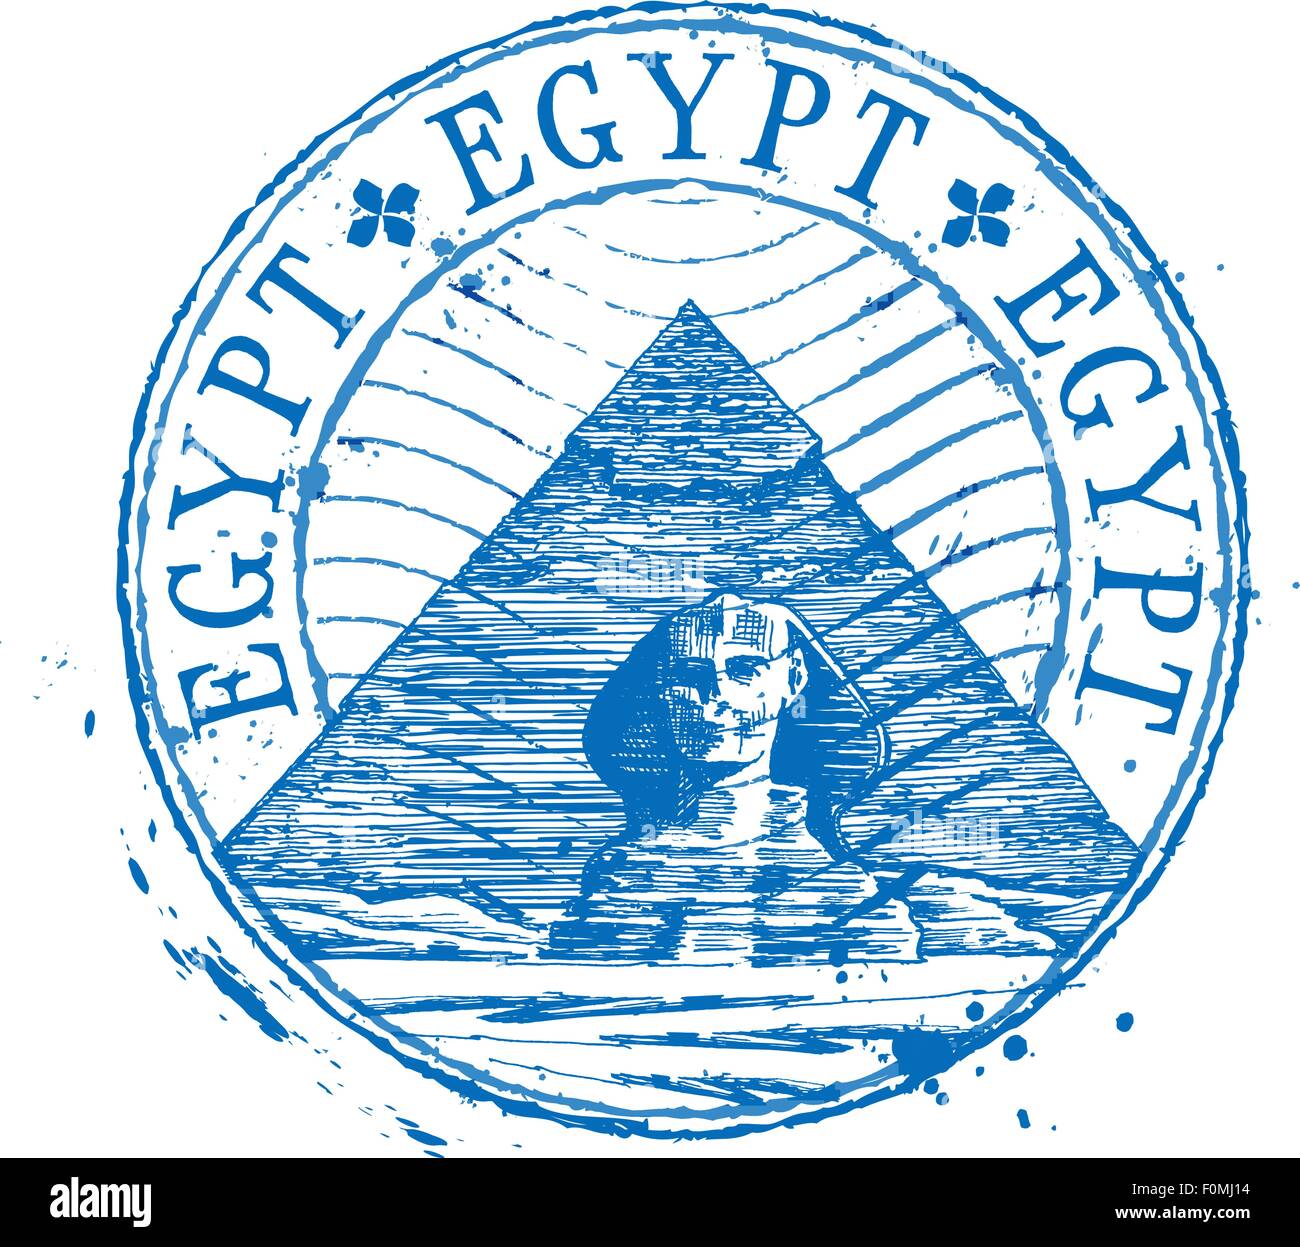 Egyptian Logo